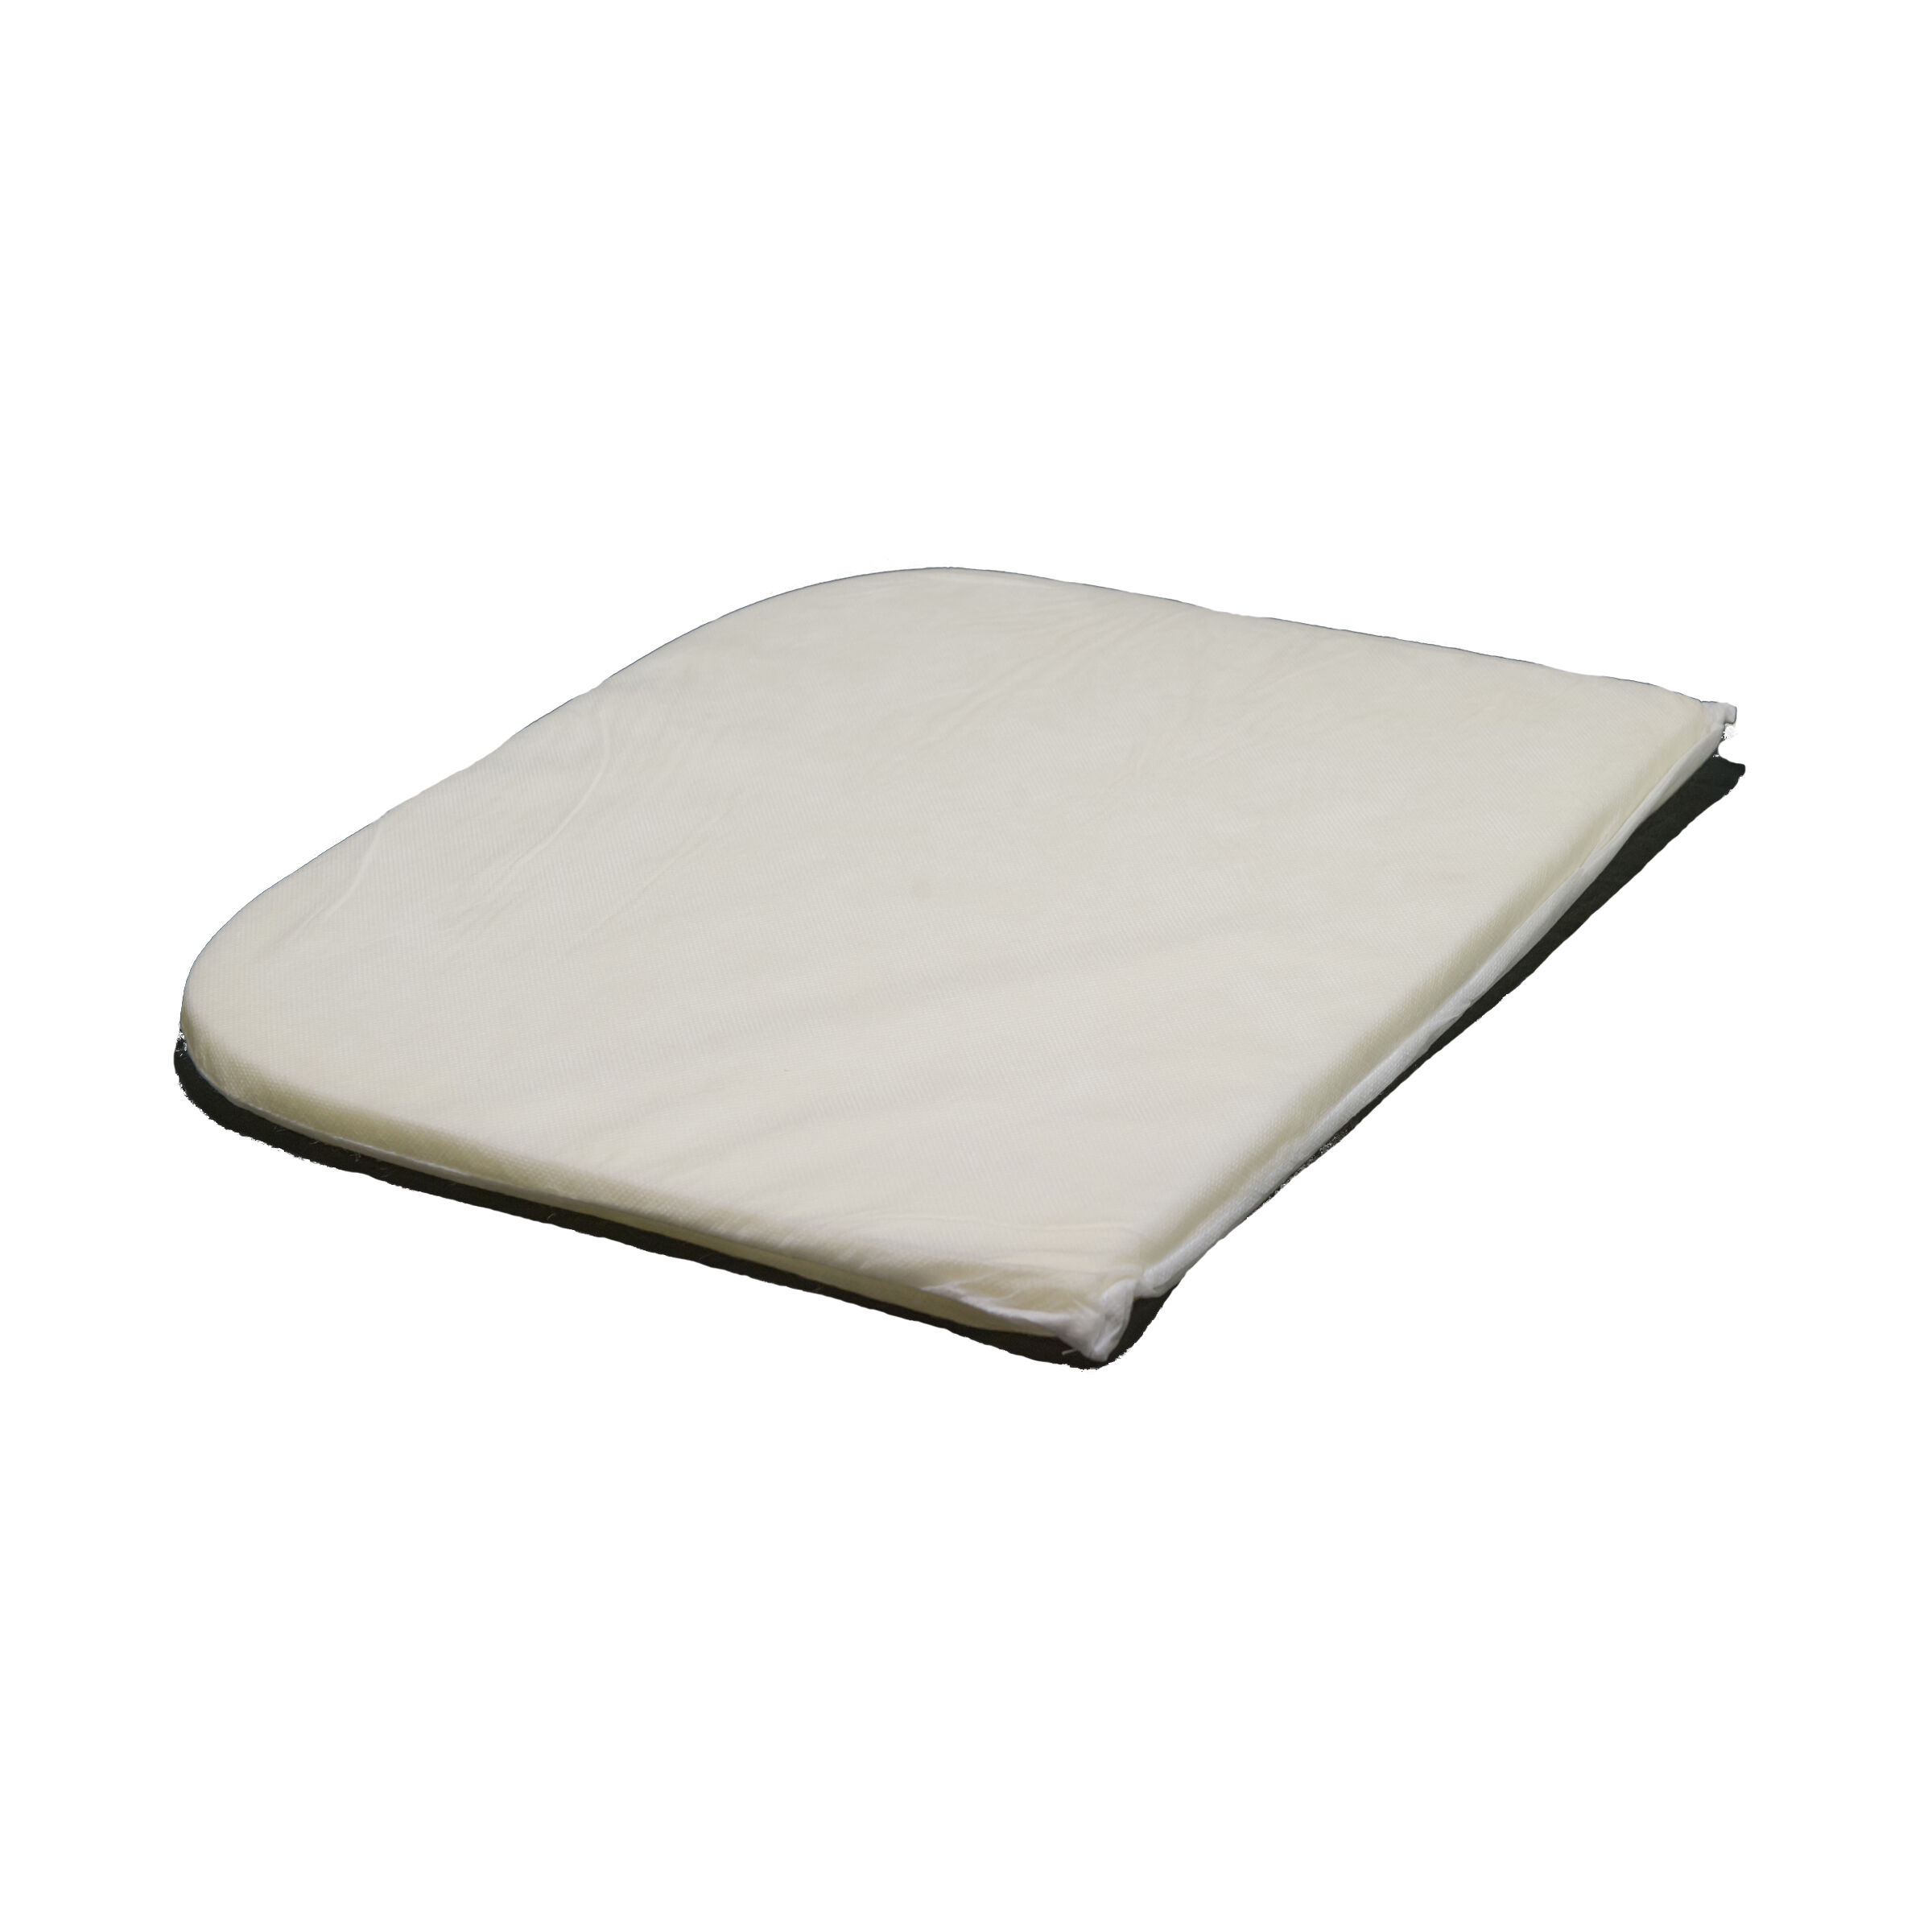 replacement bassinet mattress